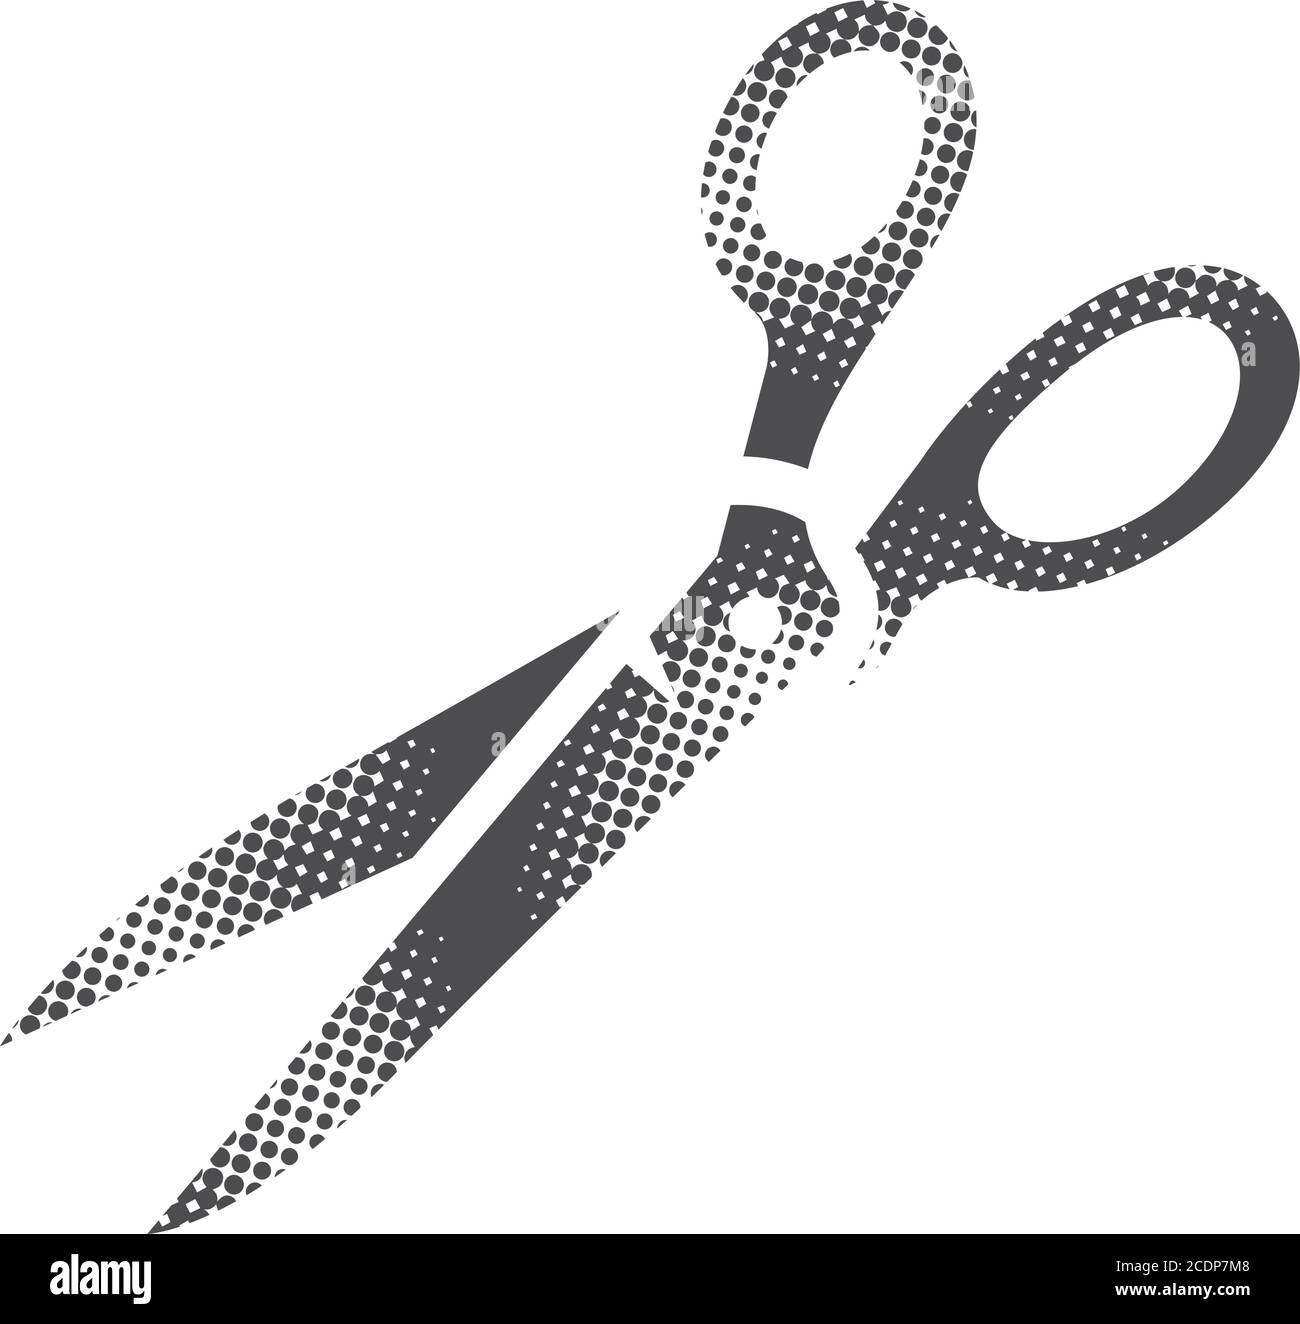 Scissor icon in halftone style. Black and white monochrome vector illustration. Stock Vector